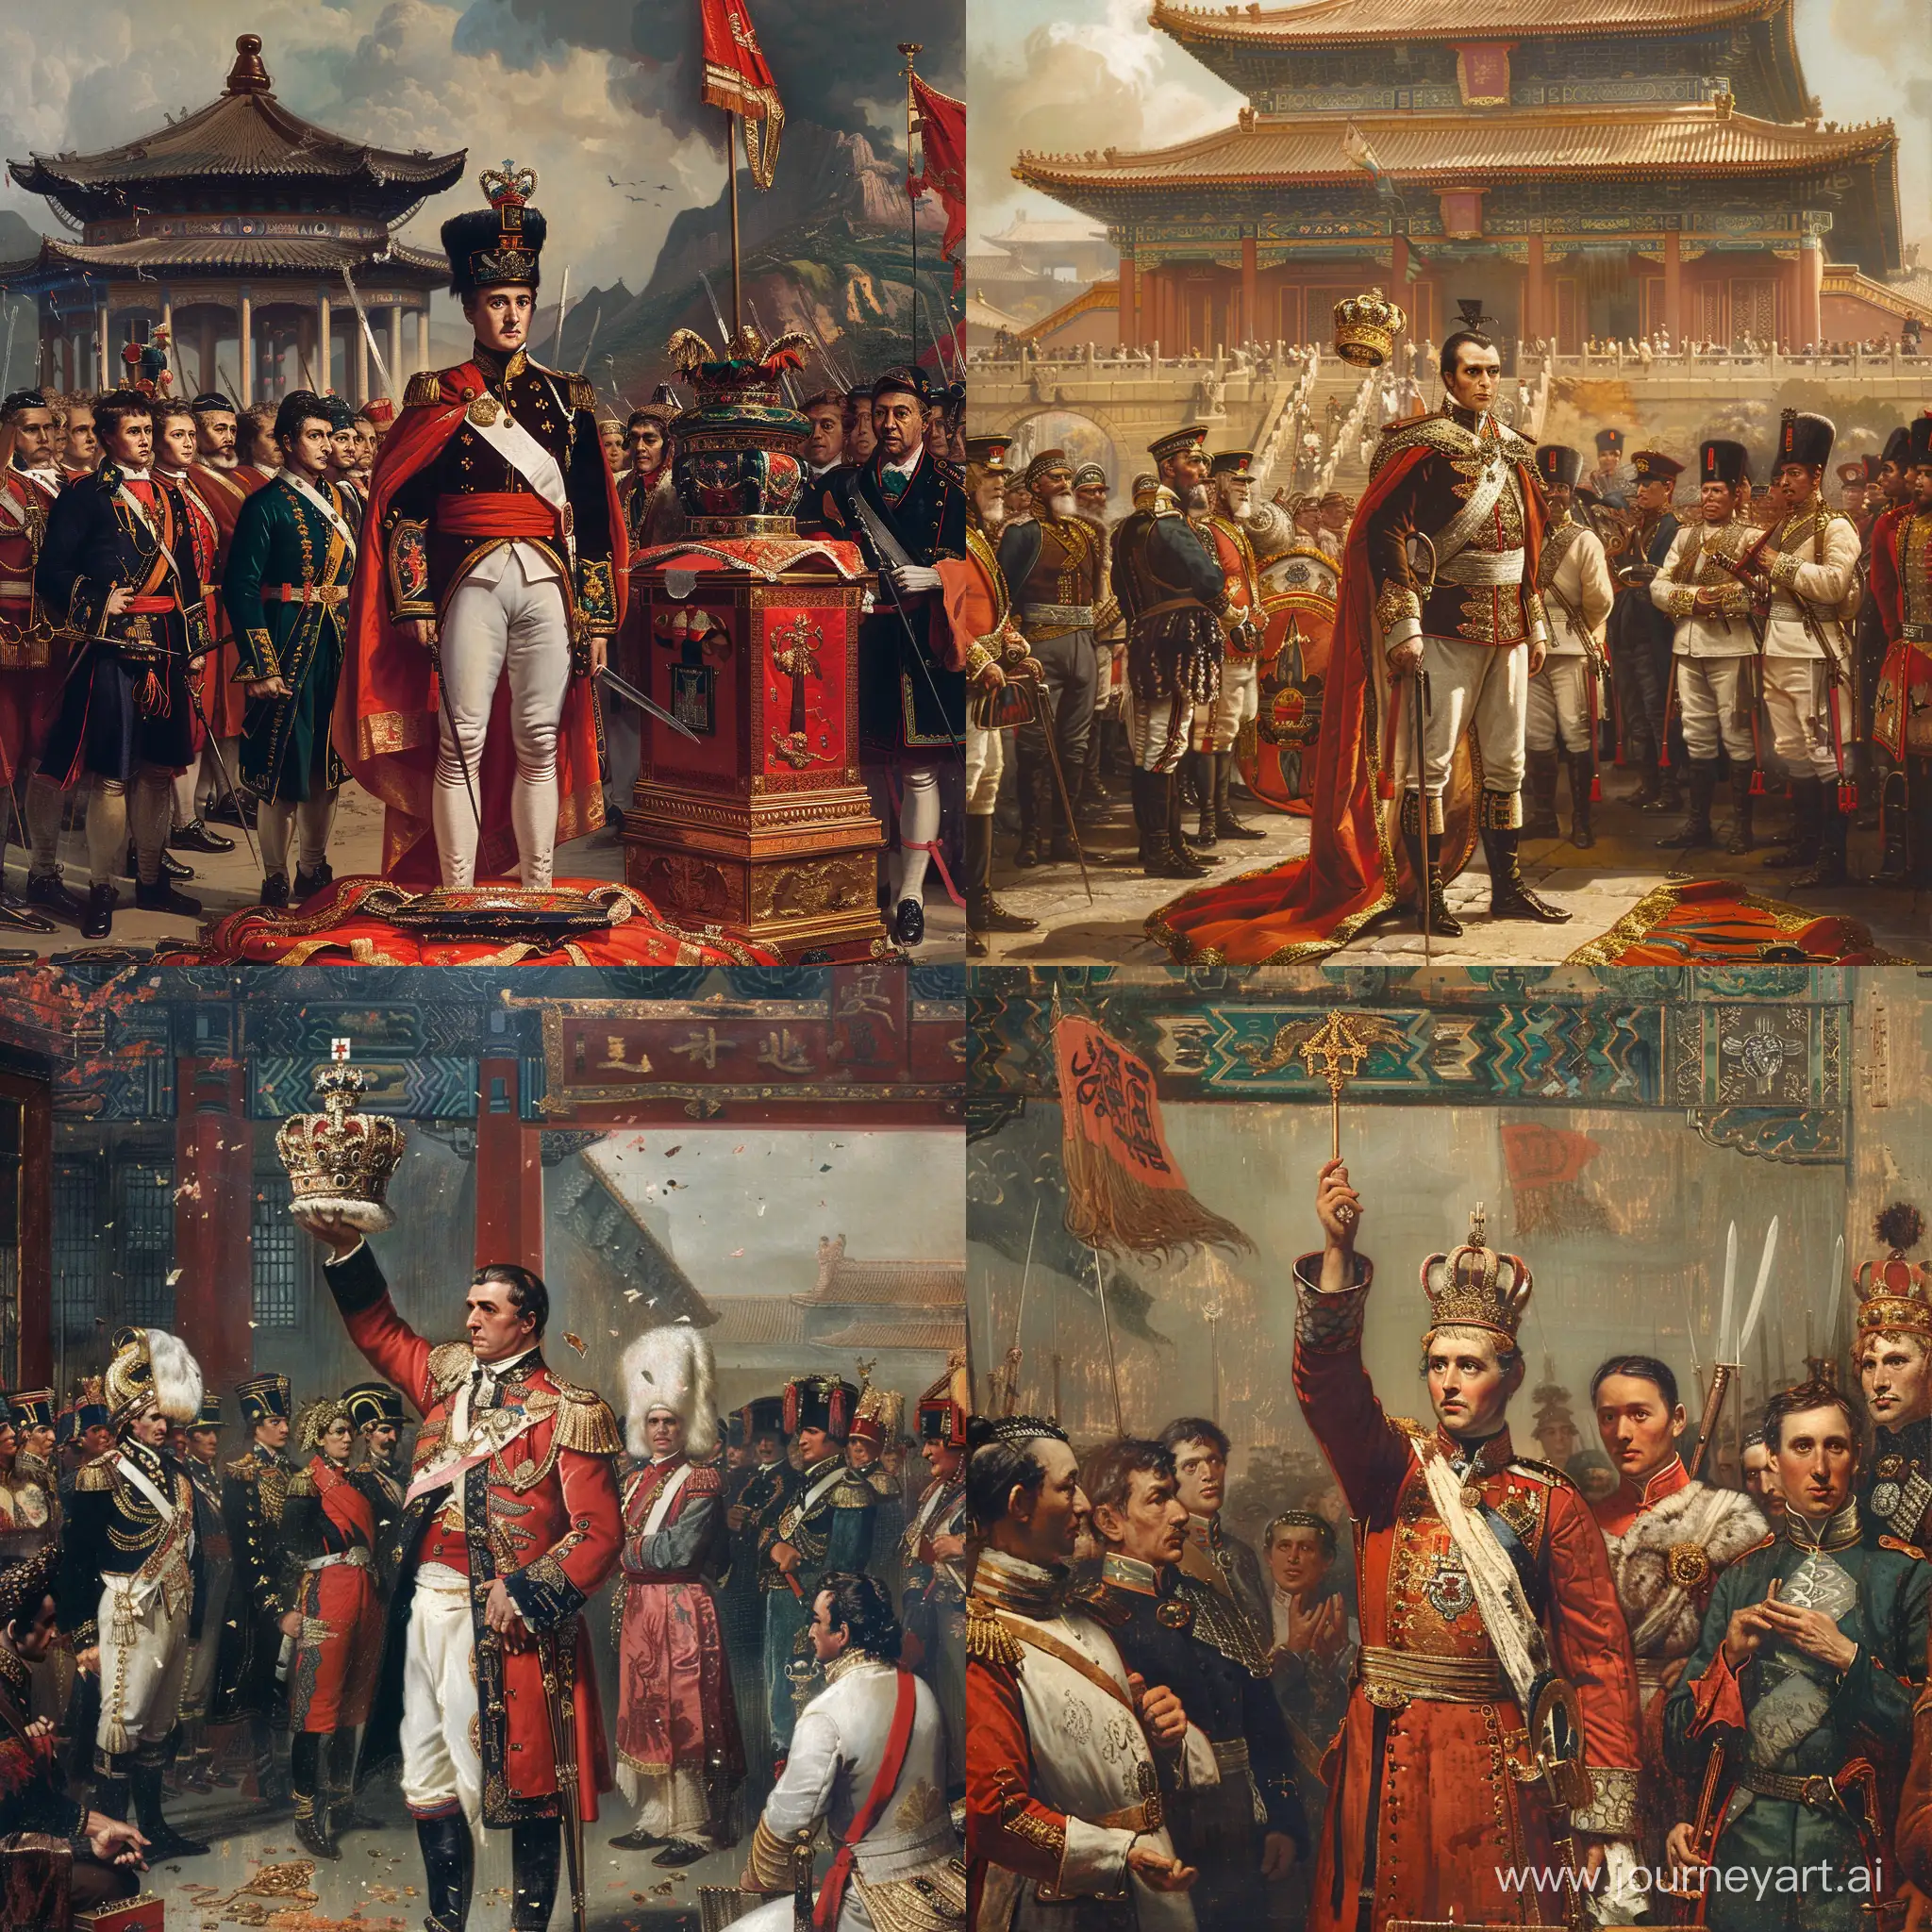 napoleon bonaparte crowns himself as emperor of china